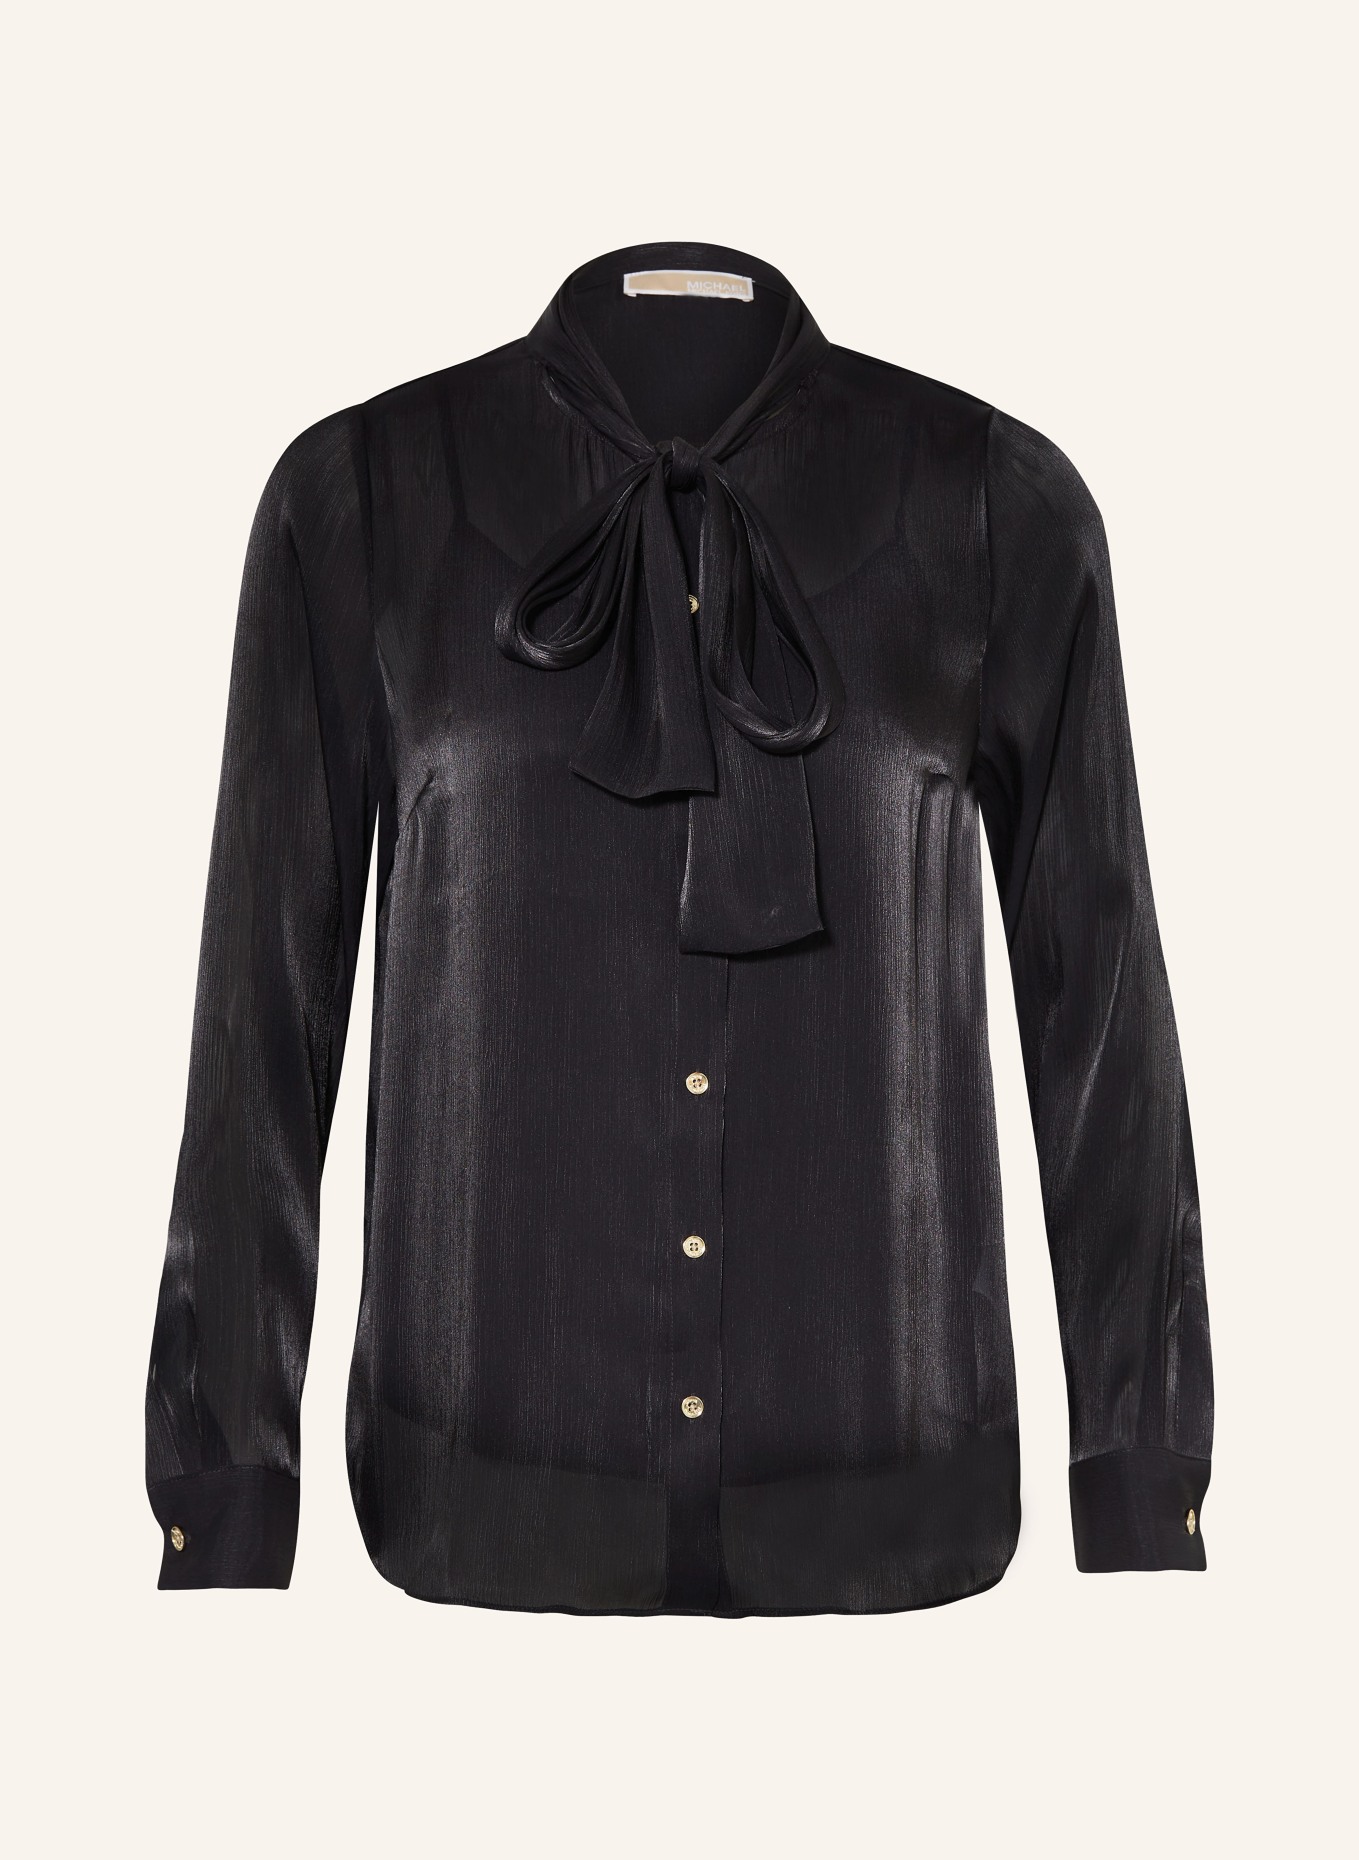 MICHAEL KORS Satin bow-tie blouse, Color: BLACK (Image 1)